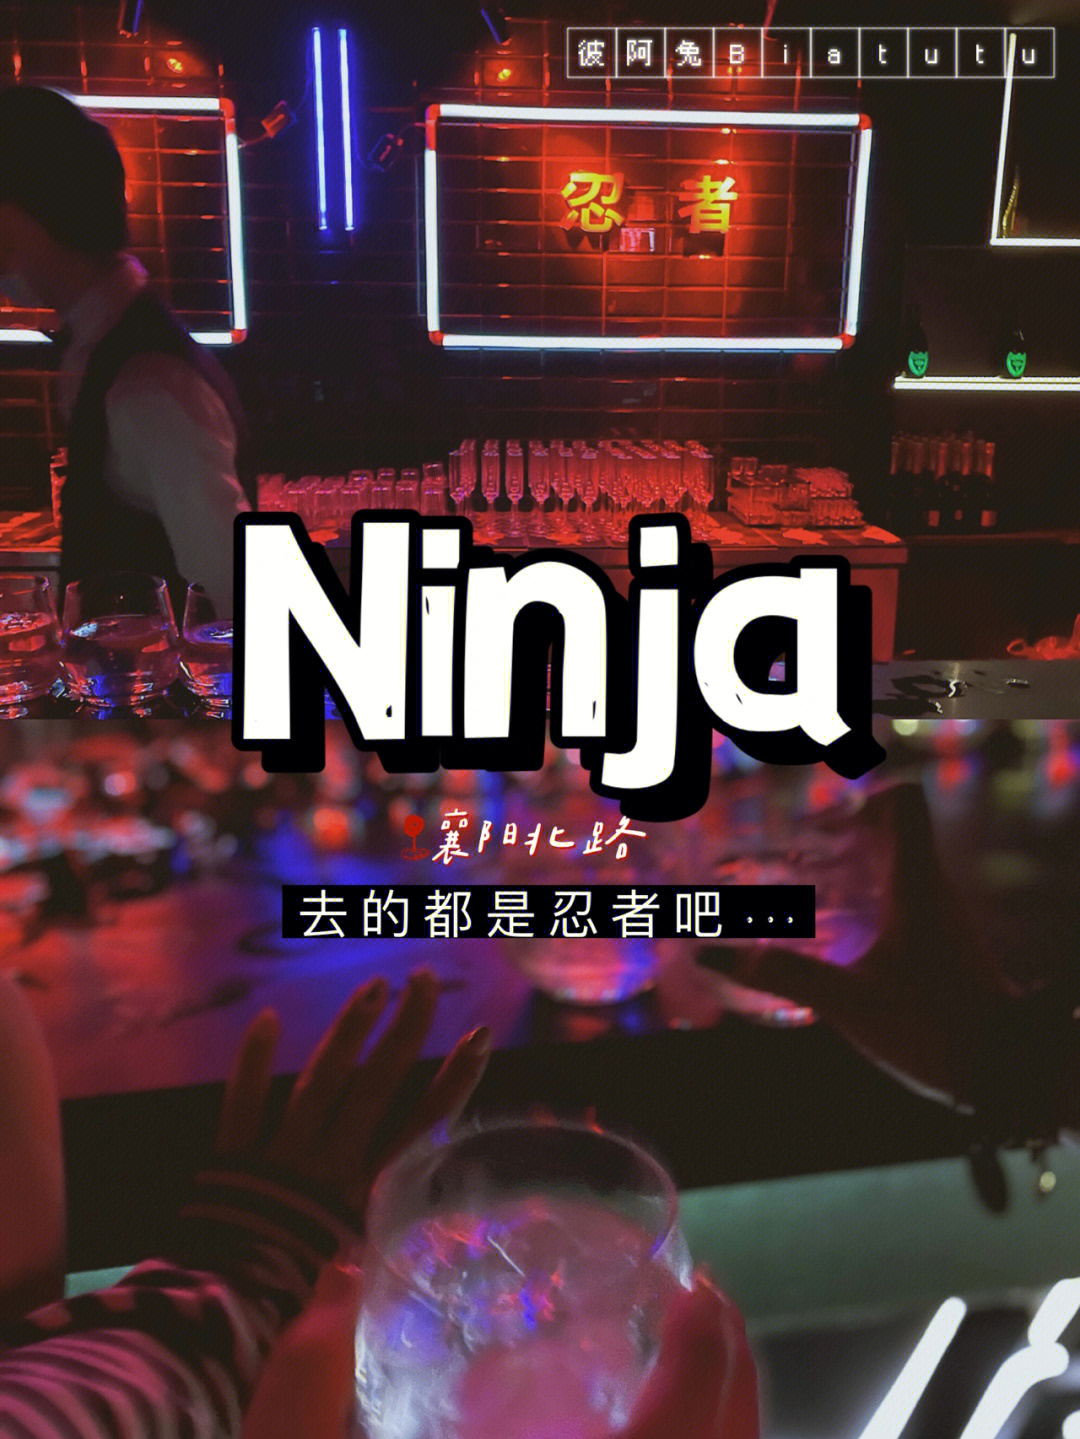 上海ninja酒吧图片